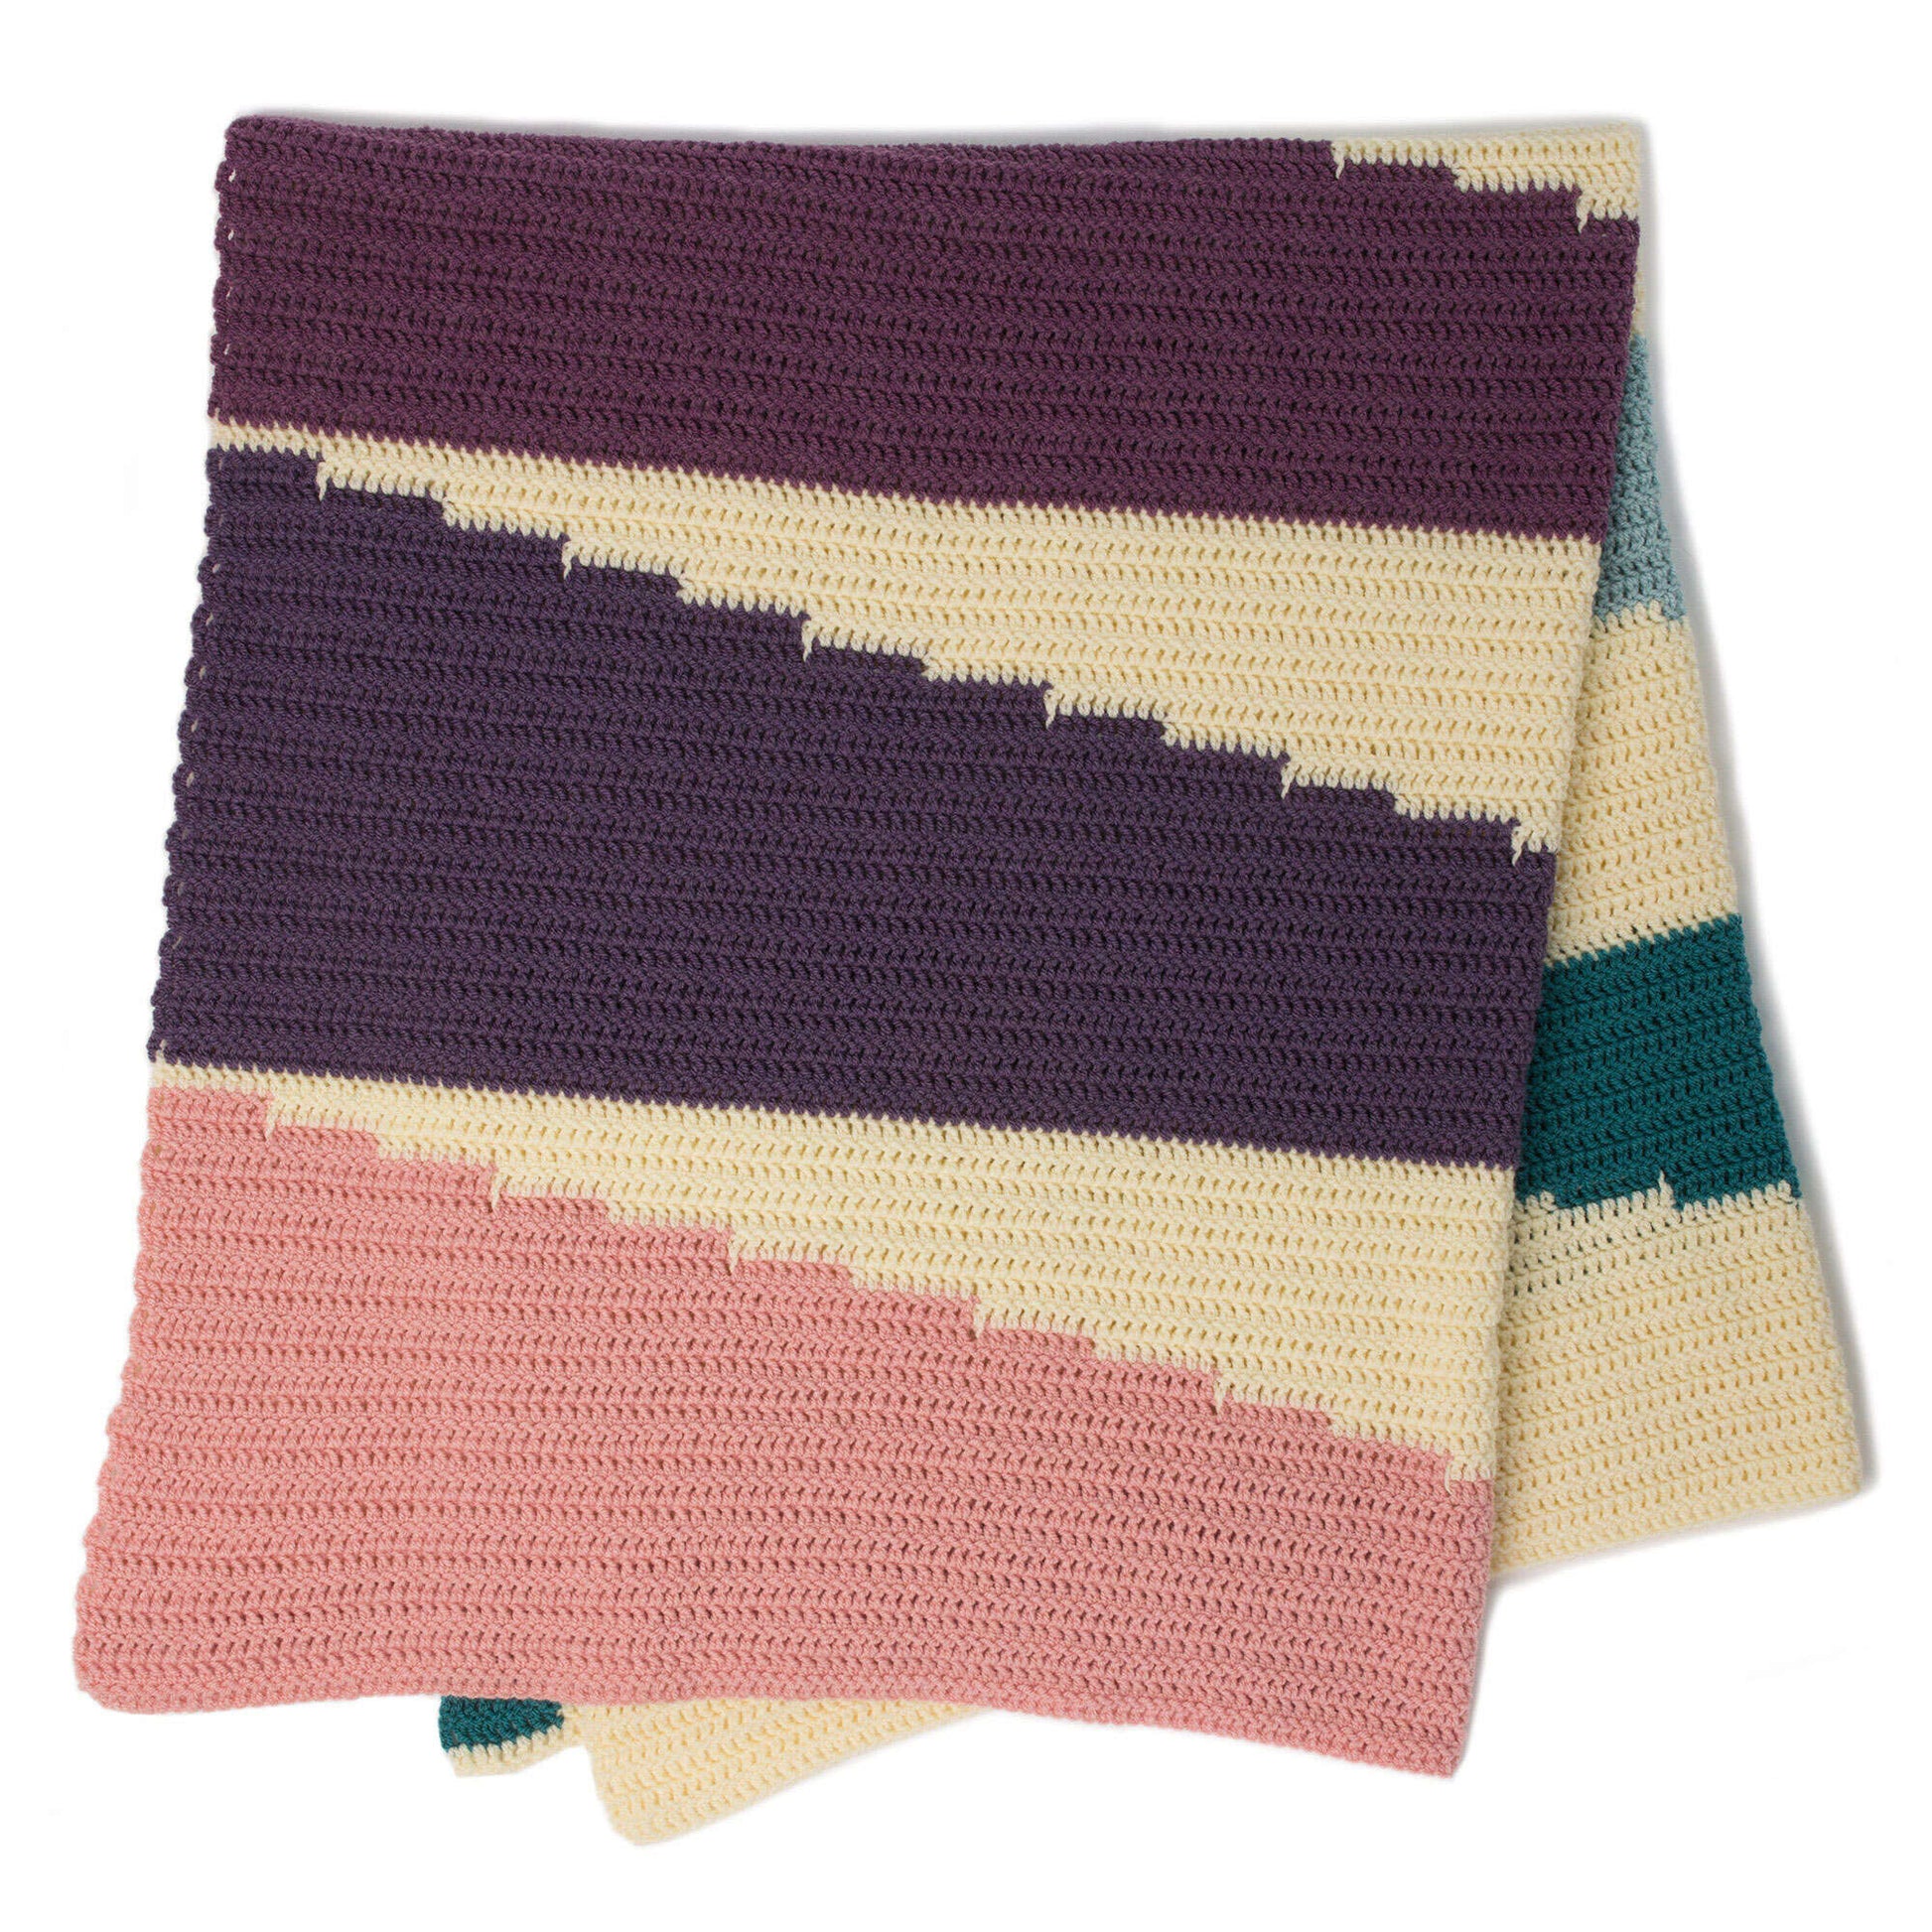 Free Patons Wedge It Crochet Blanket Pattern